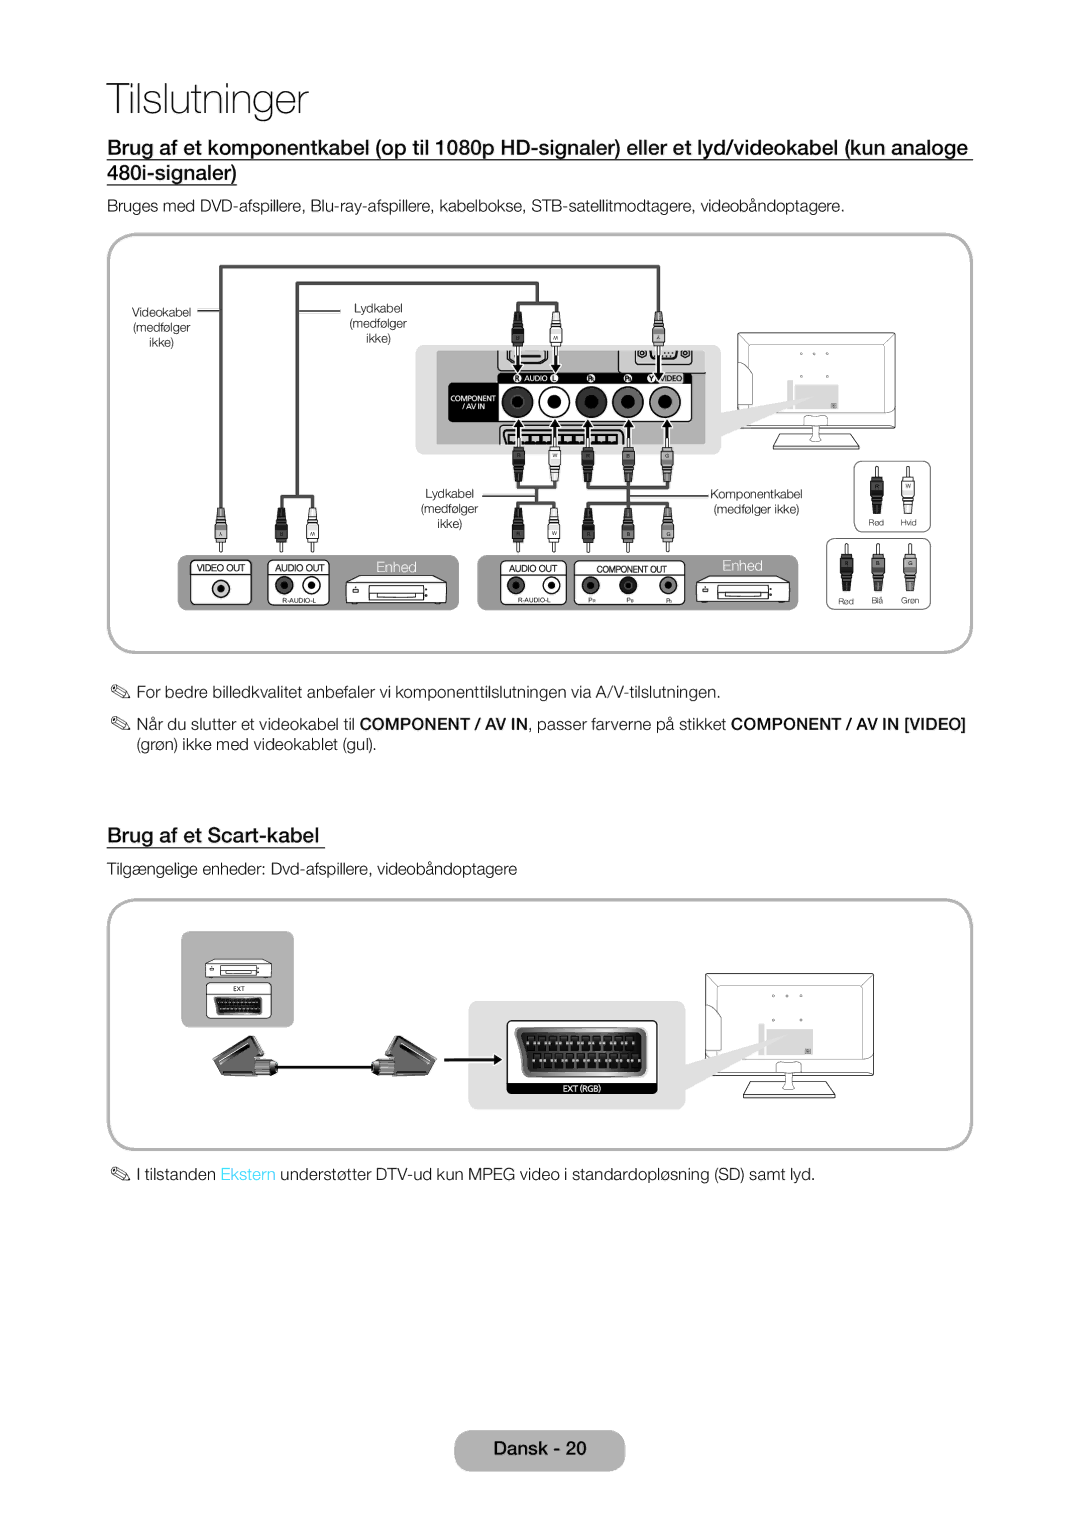 Samsung LT27C370EW/XE, LT27C350EW/XE manual Brug af et Scart-kabel , Tilgængelige enheder Dvd-afspillere, videobåndoptagere 